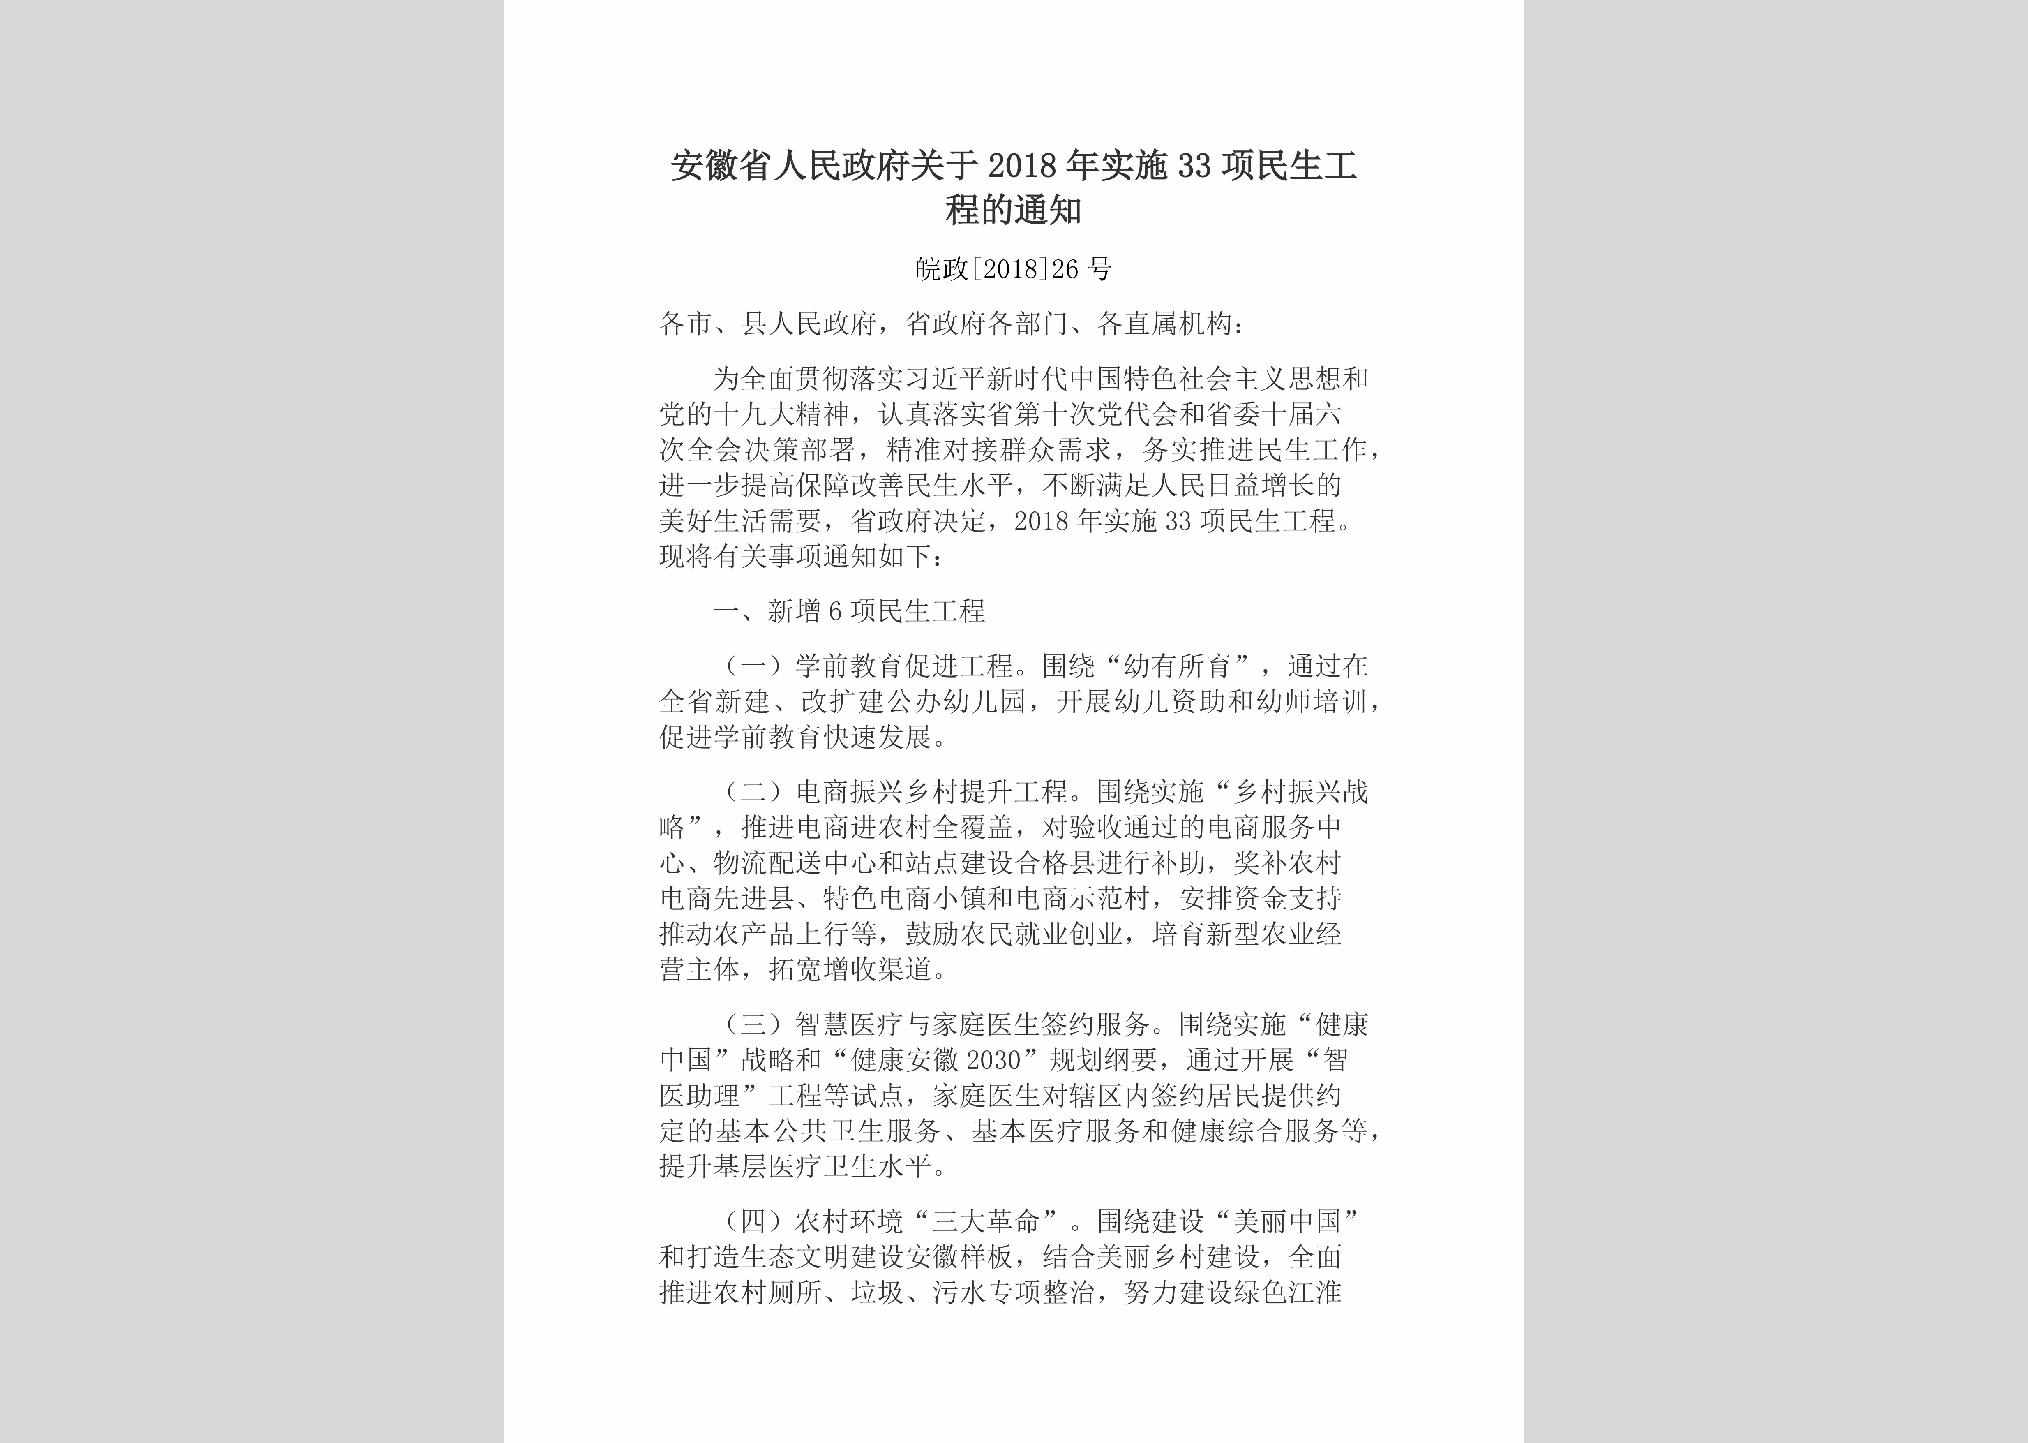 皖政[2018]26号：安徽省人民政府关于2018年实施33项民生工程的通知